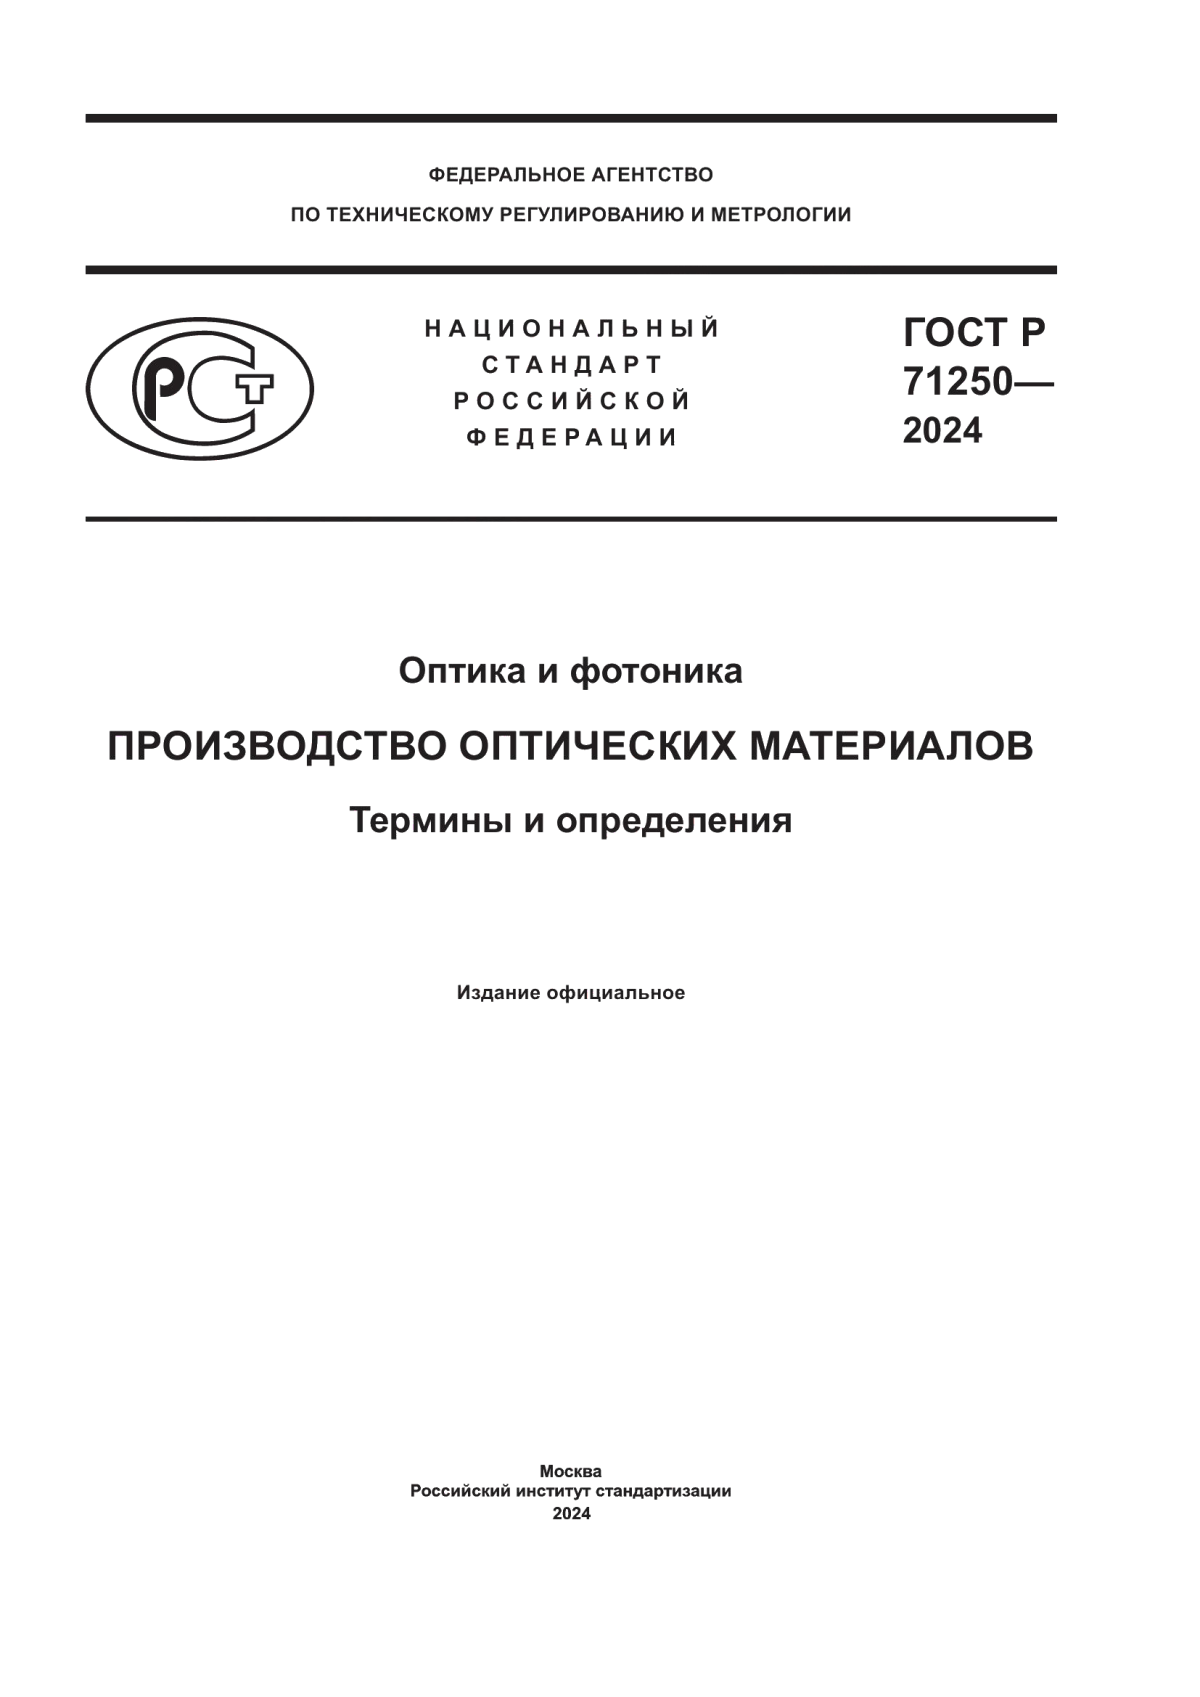 ГОСТ Р 71250-2024 Оптика и фотоника. Производство оптических материалов. Термины и определения